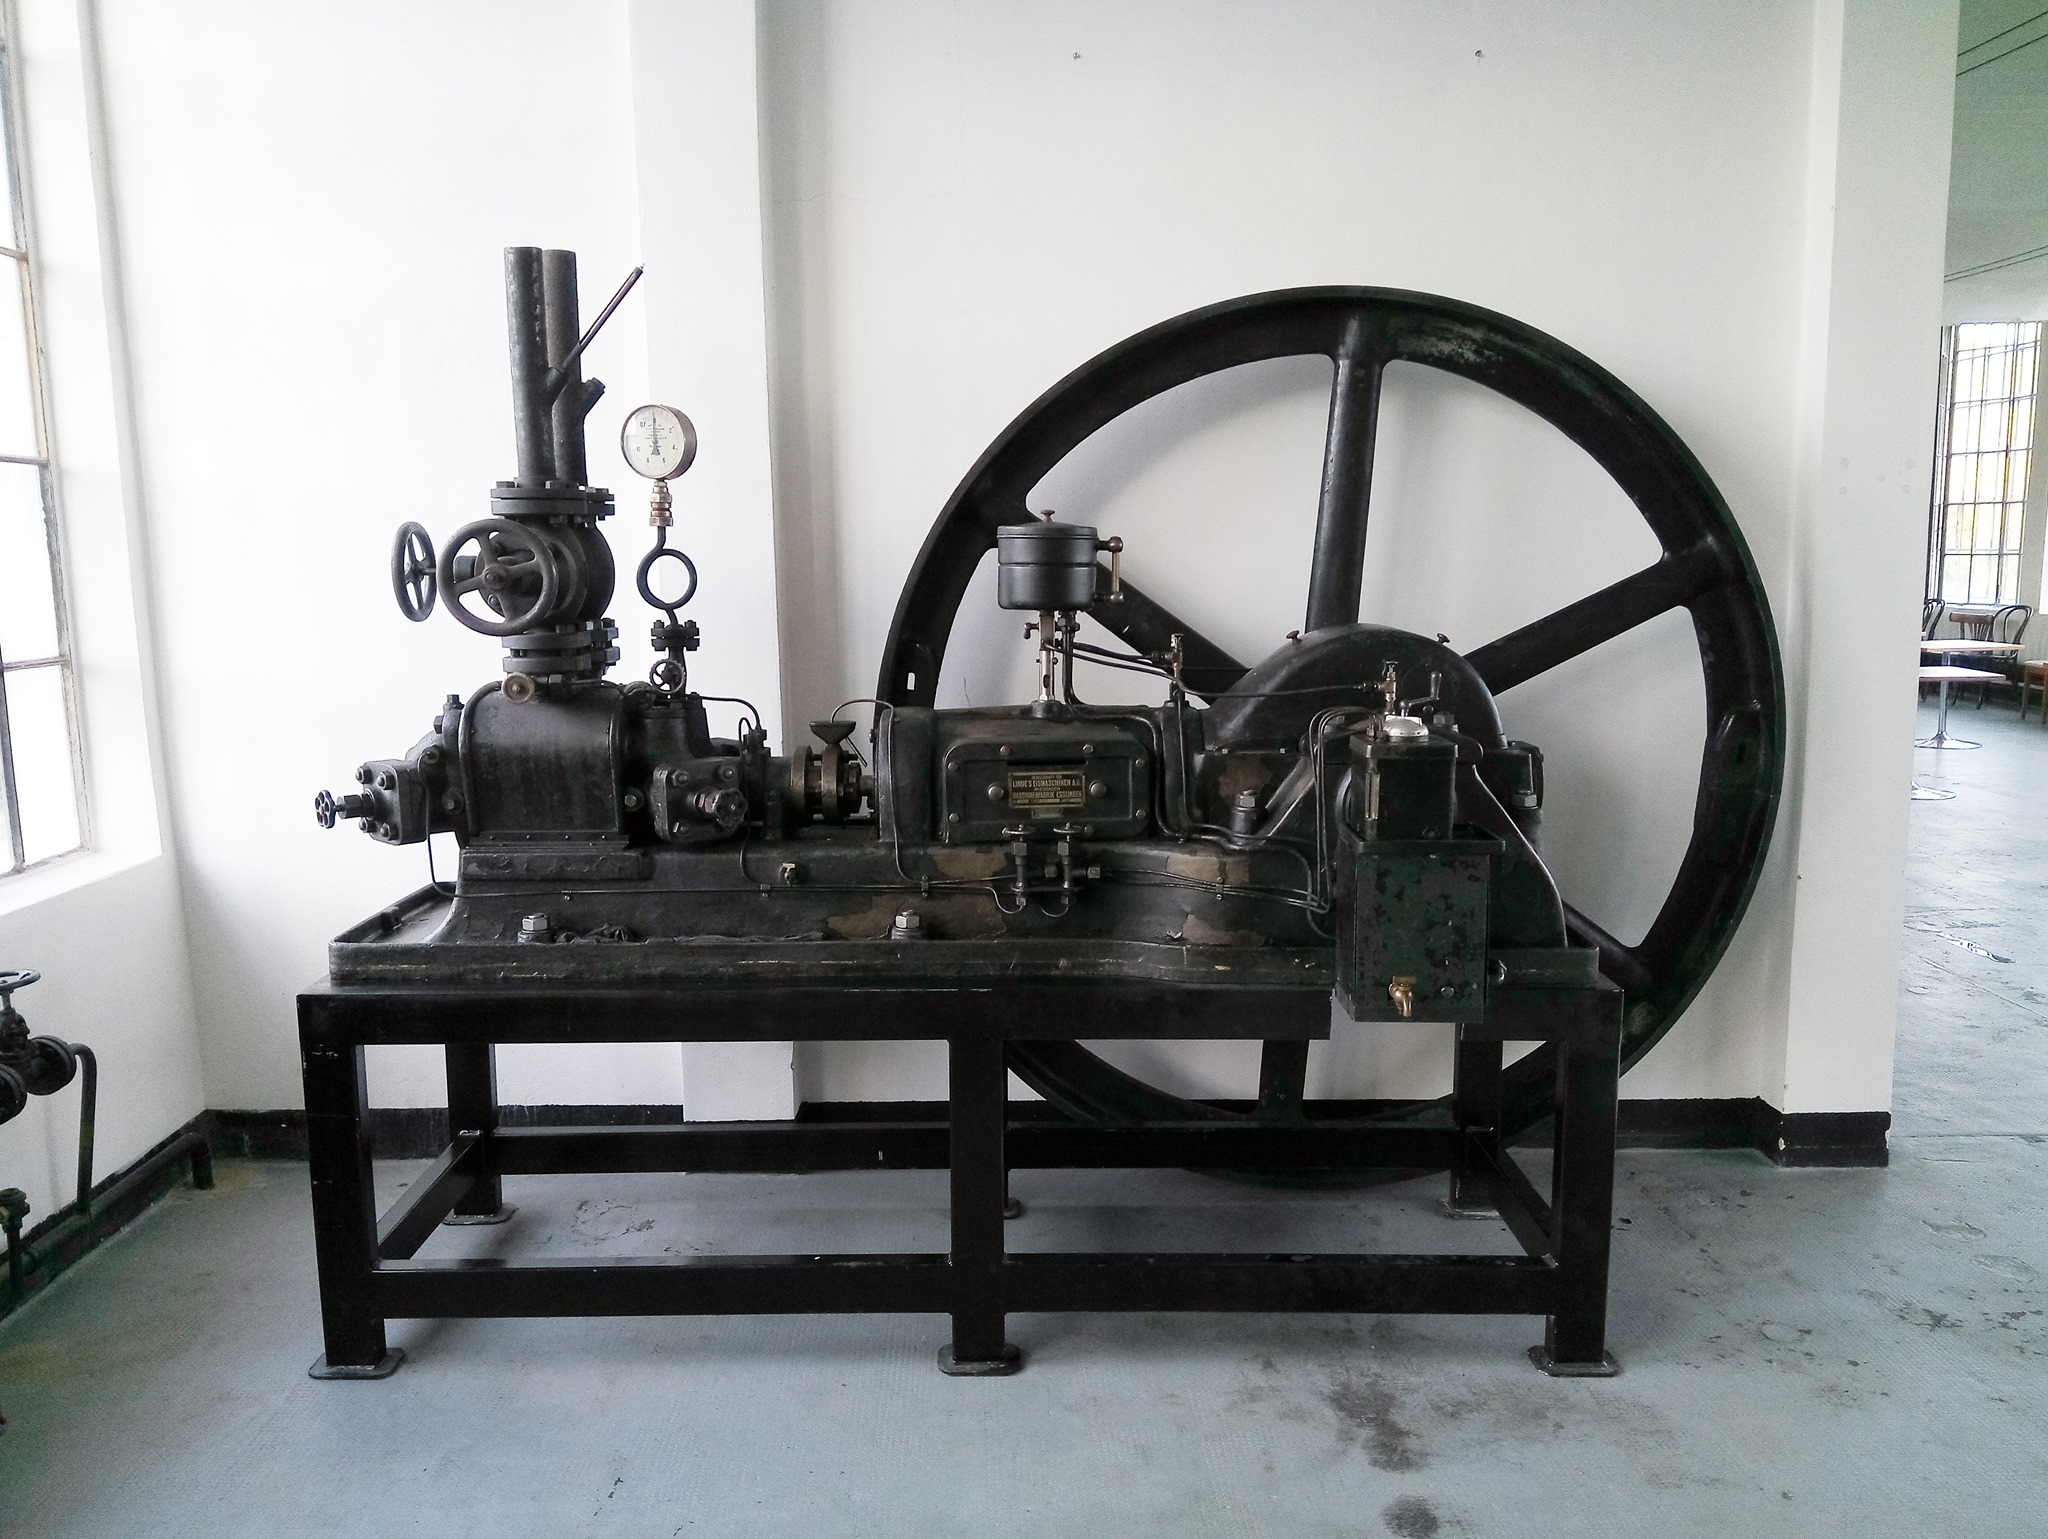 Muzeum starých strojů - Vonwillerka Žamberk